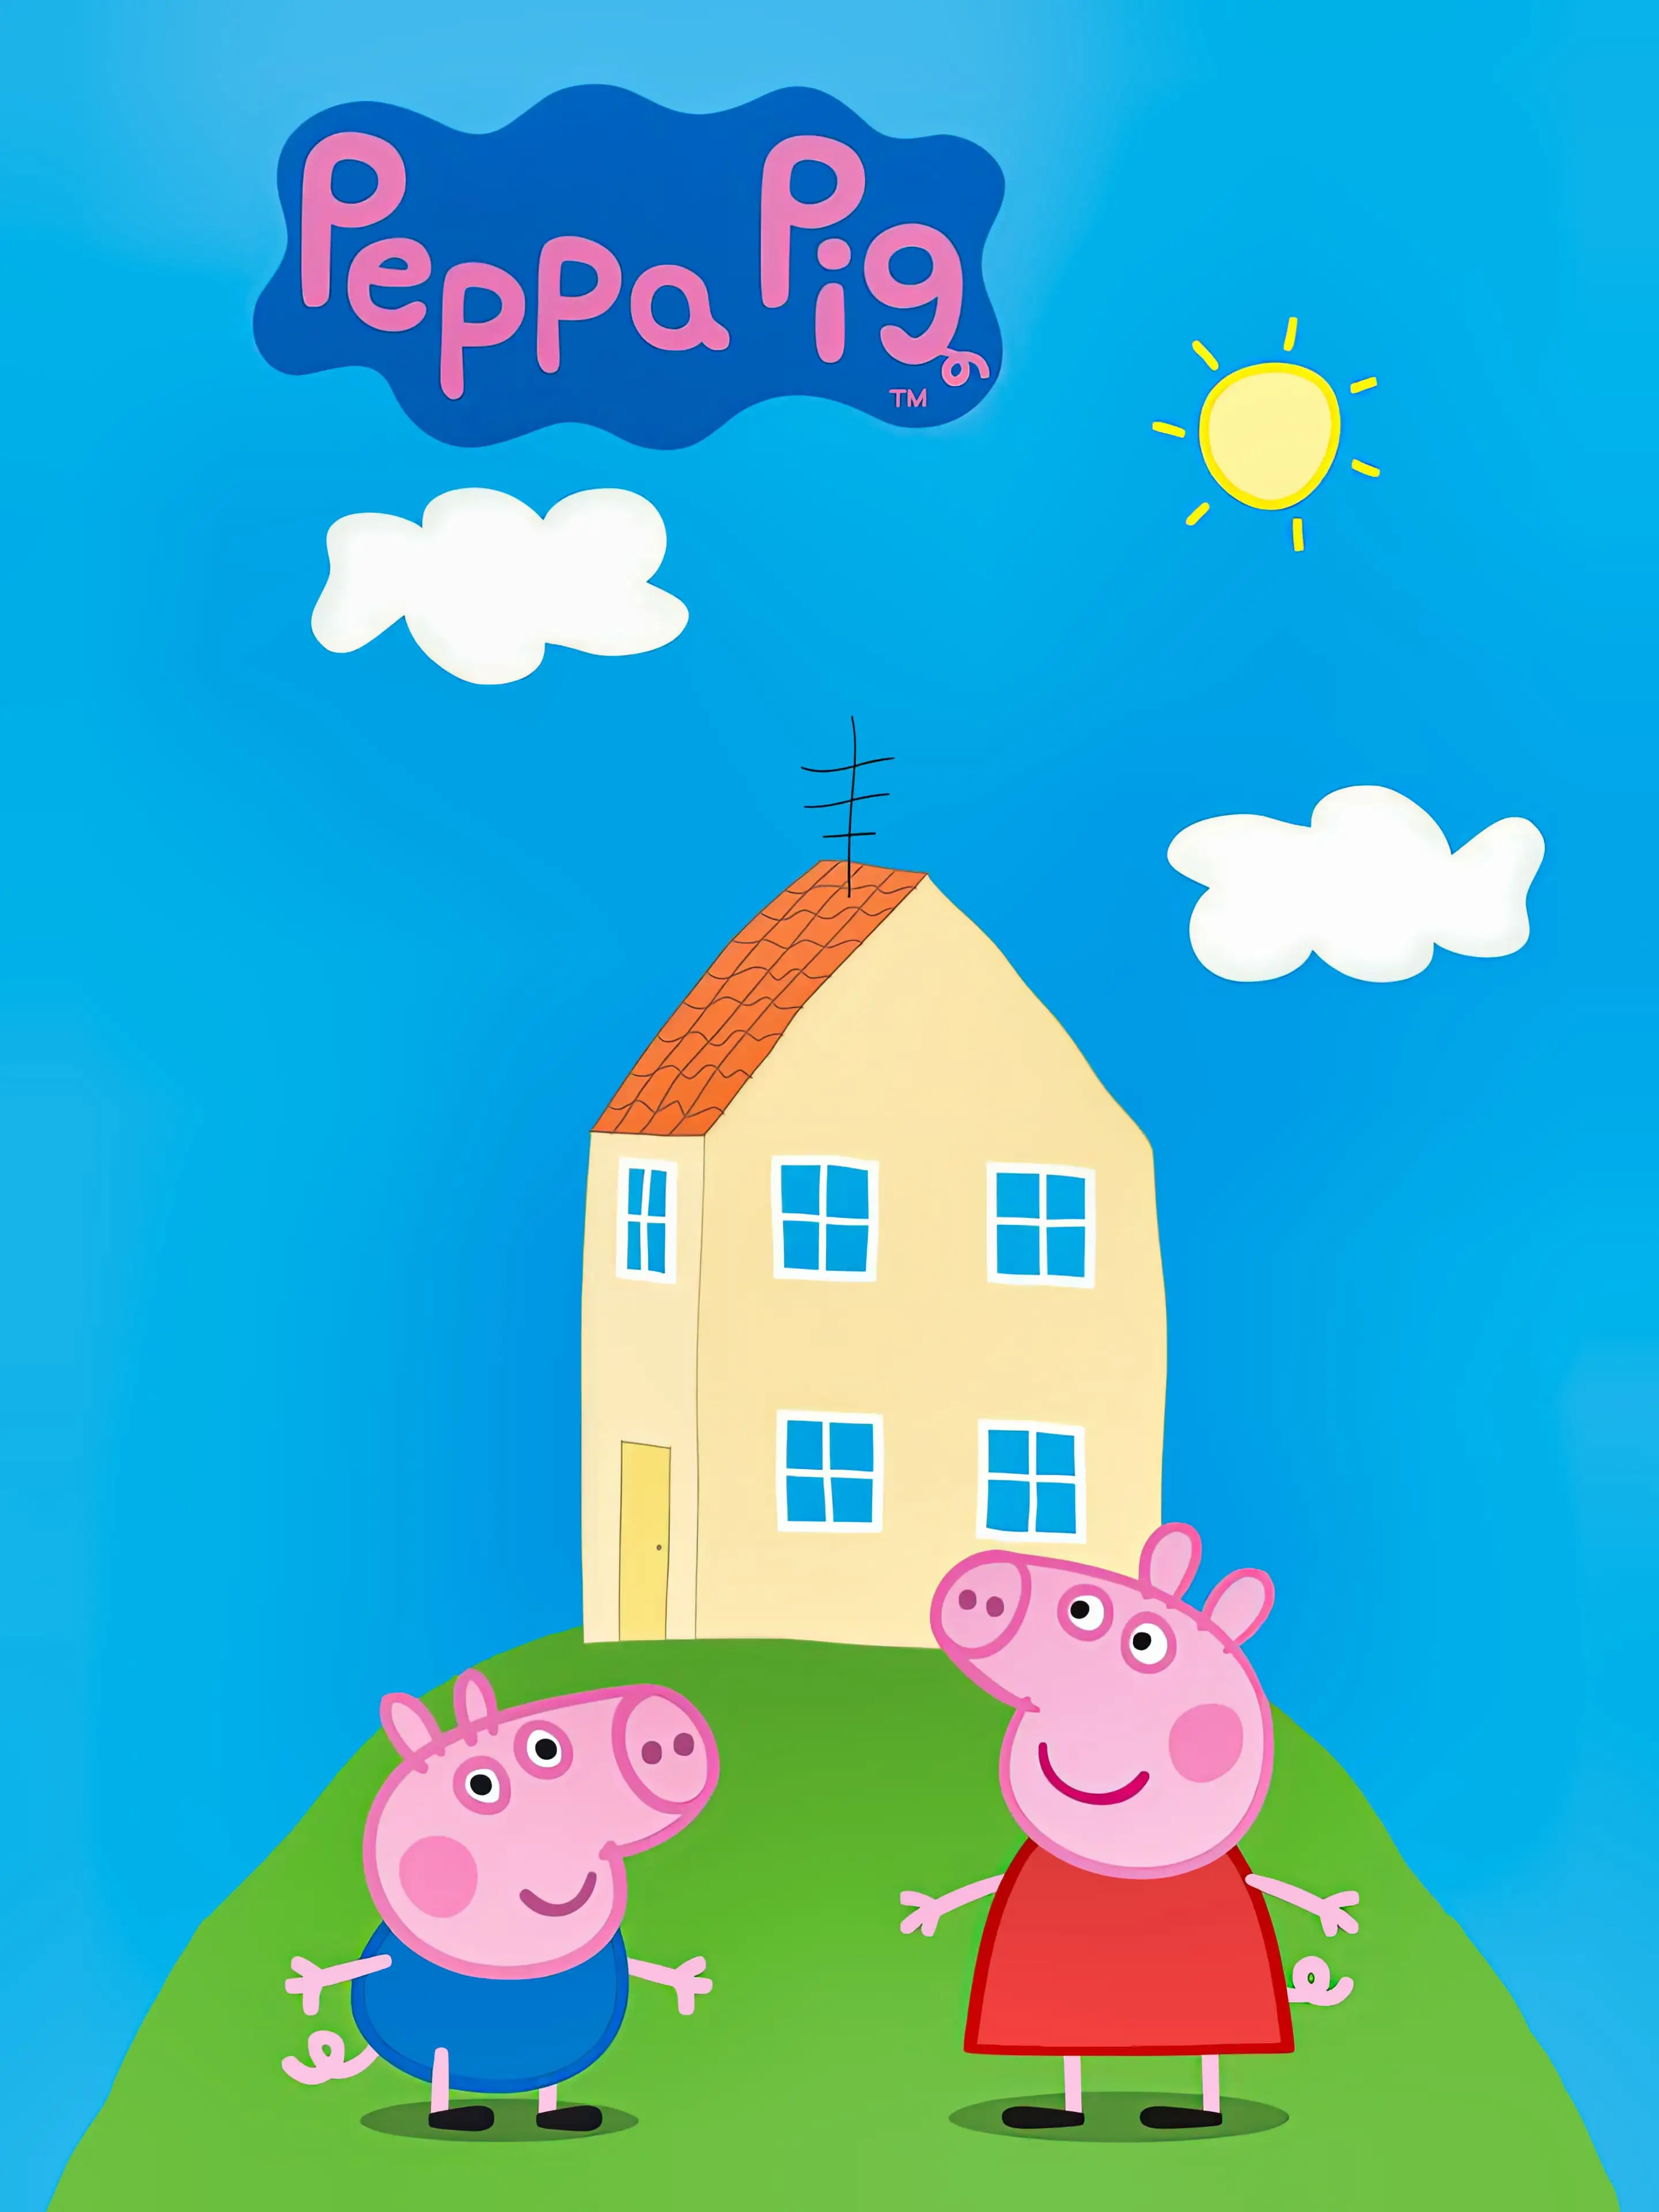 casa de peppa pig wallpaper